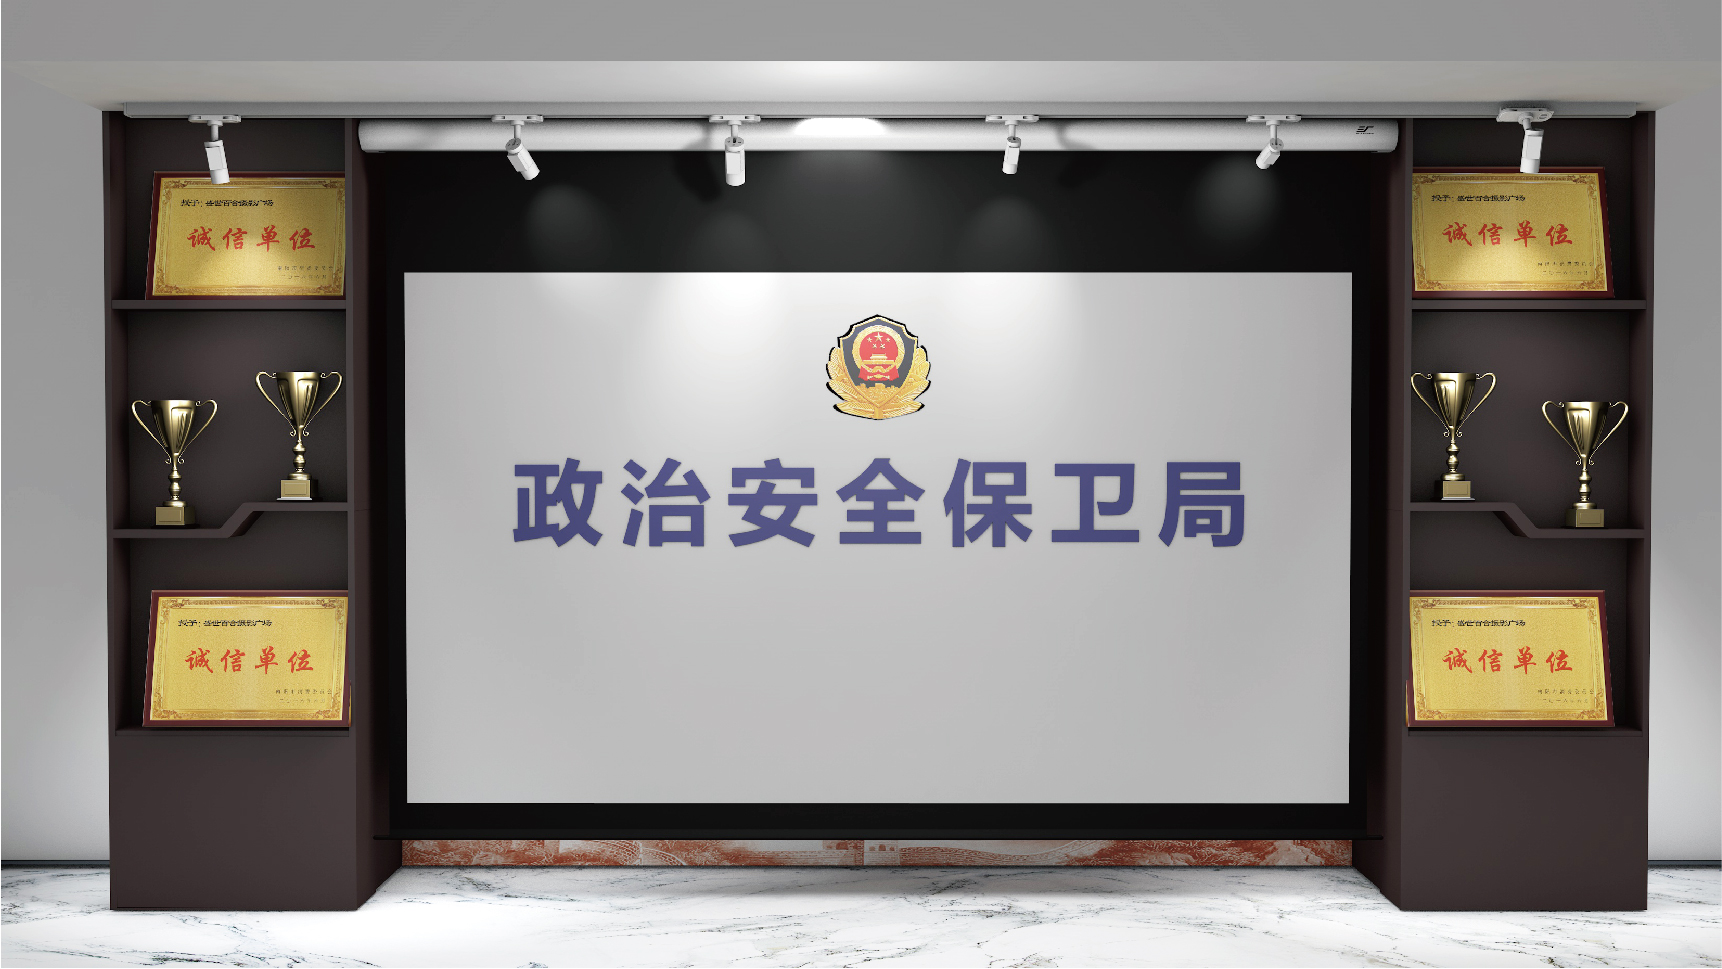 吉林省公安厅政治安全保卫局企业文化展示